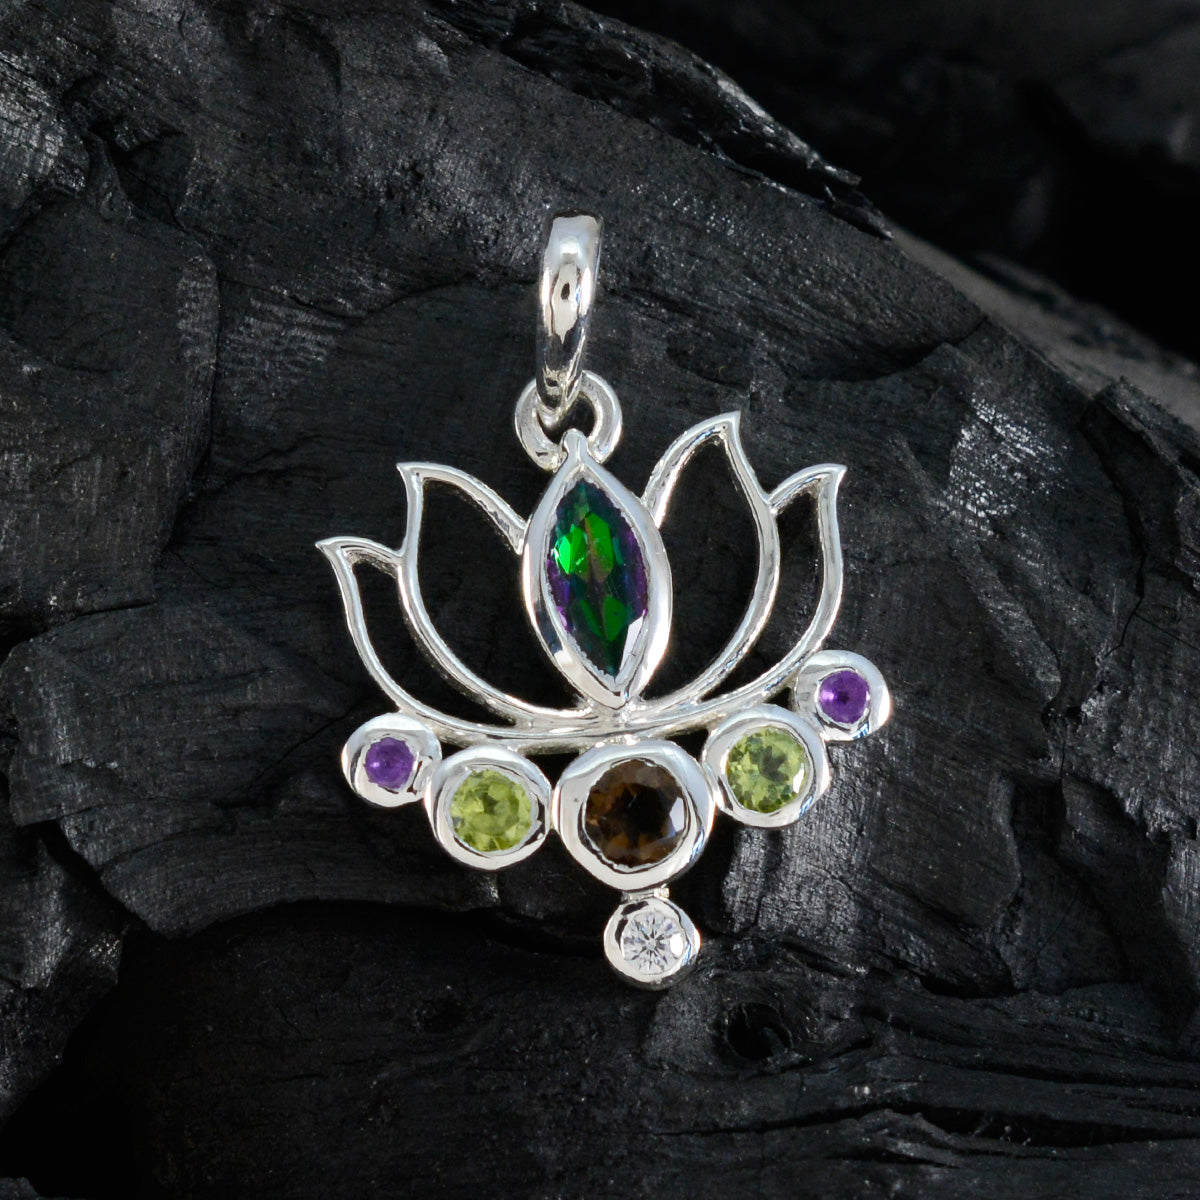 Riyo Fanciable Gems Silberanhänger mit mehreren Facetten, mehreren Farben und mehreren Steinen, Geschenk für Ehefrau